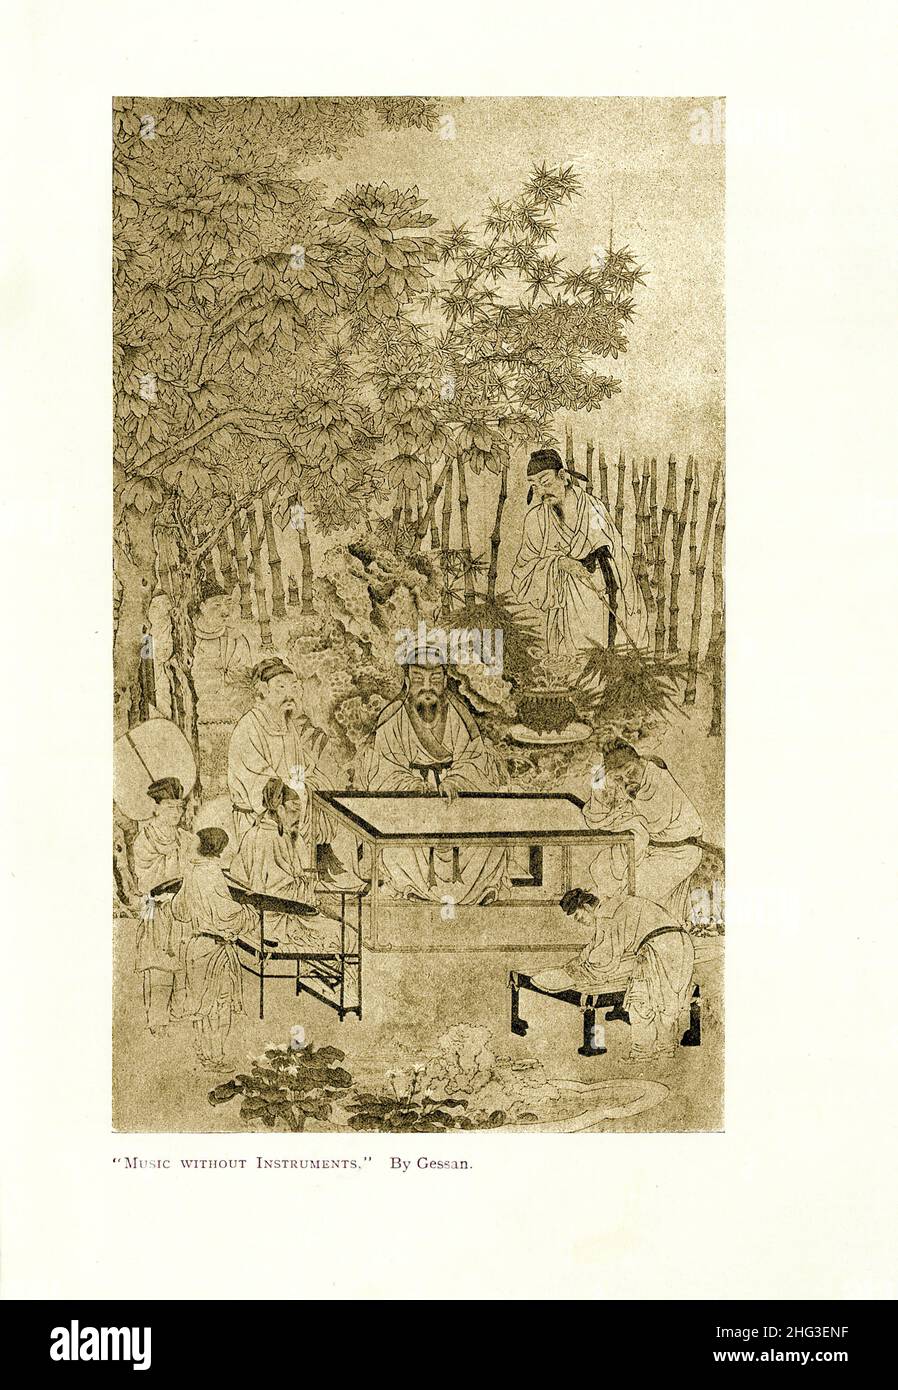 Pintura medieval china: Música sin instrumentos. Por Gessan. Reproducción de la ilustración del libro de 1912 Foto de stock